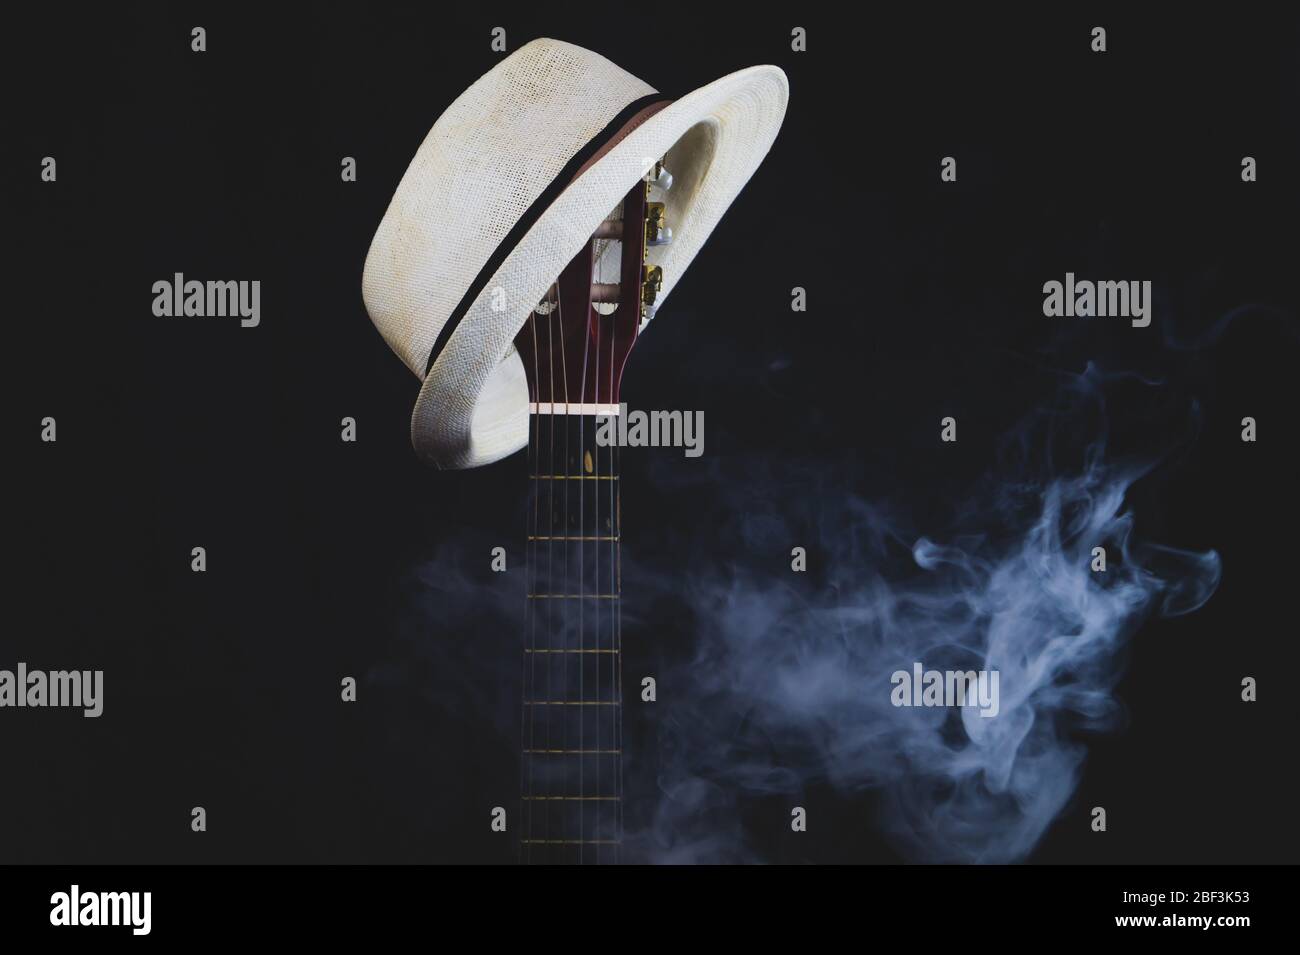 Weißer Hut hängt auf dem rauchenden Gitarrenbrett. Akustisches Musikinstrument. Saiten auf dem Gitarrenhals aus nächster Nähe Stockfoto